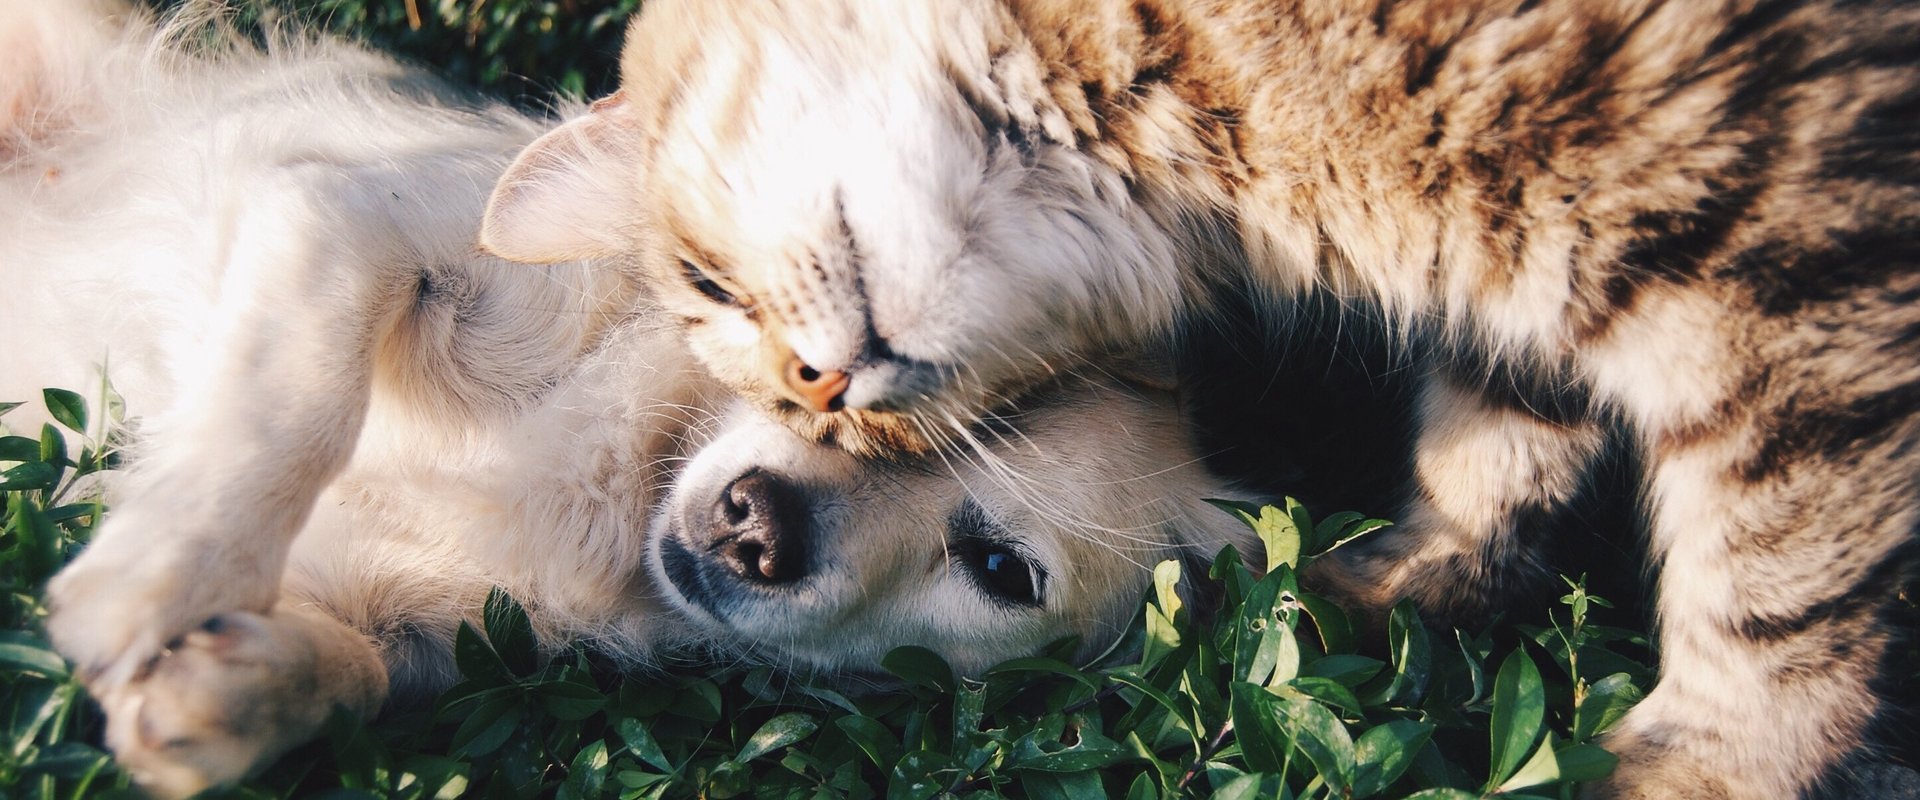 Ein Hund und eine Katze liegen schmusend im Gras.